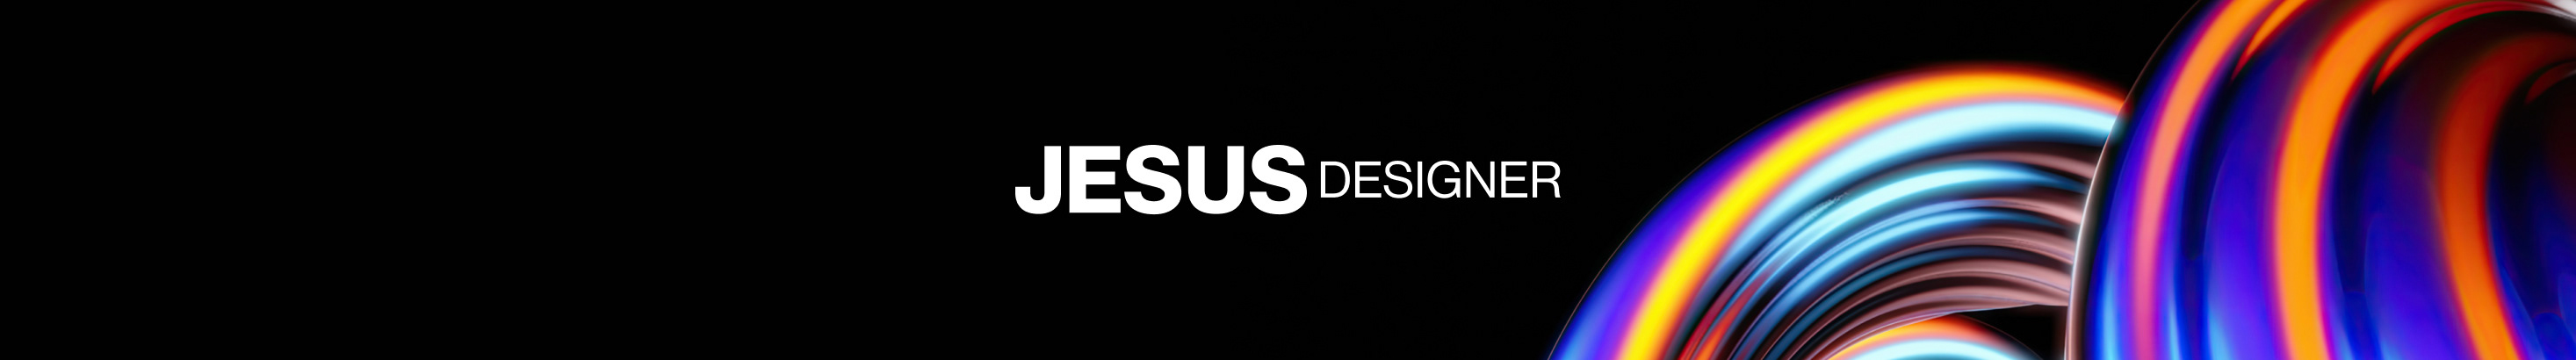 Banner de perfil de Jesus Designer